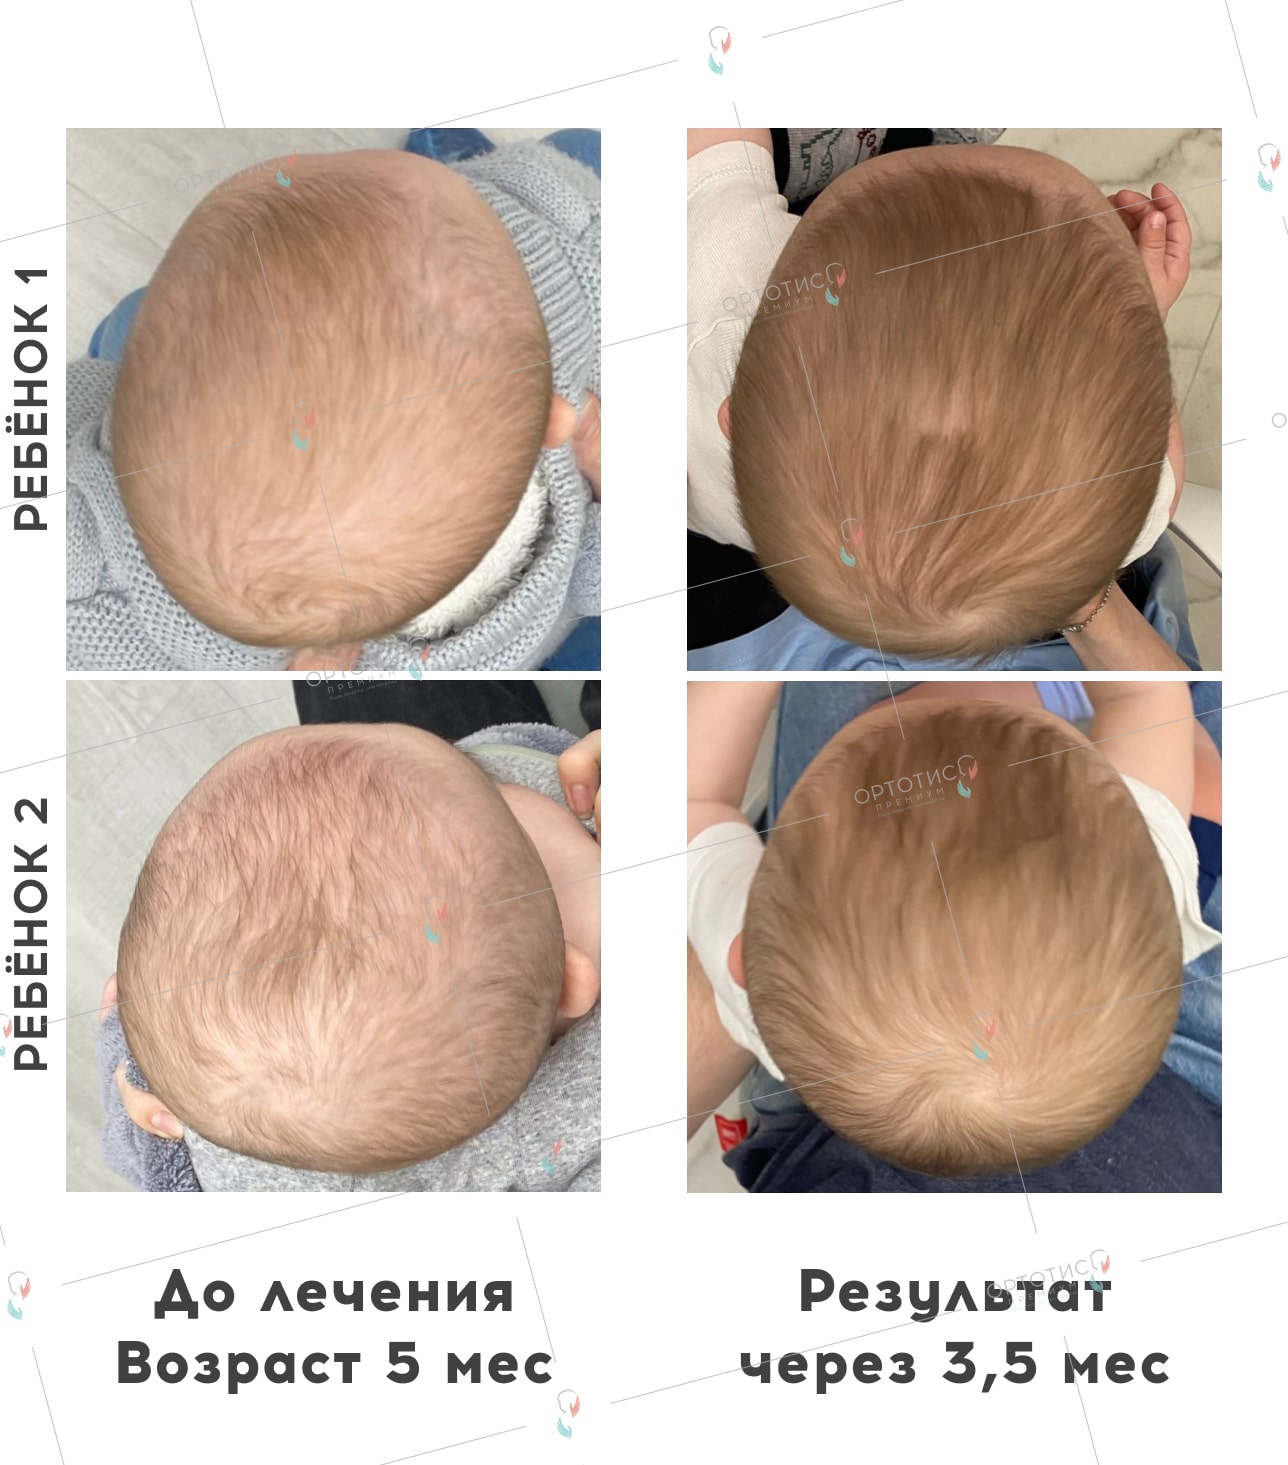 Ребенок 1 - Плагиоцефалия <br> Ребенок 2 - Брахицефалия, 3,5 месяца - Ортотис Премиум